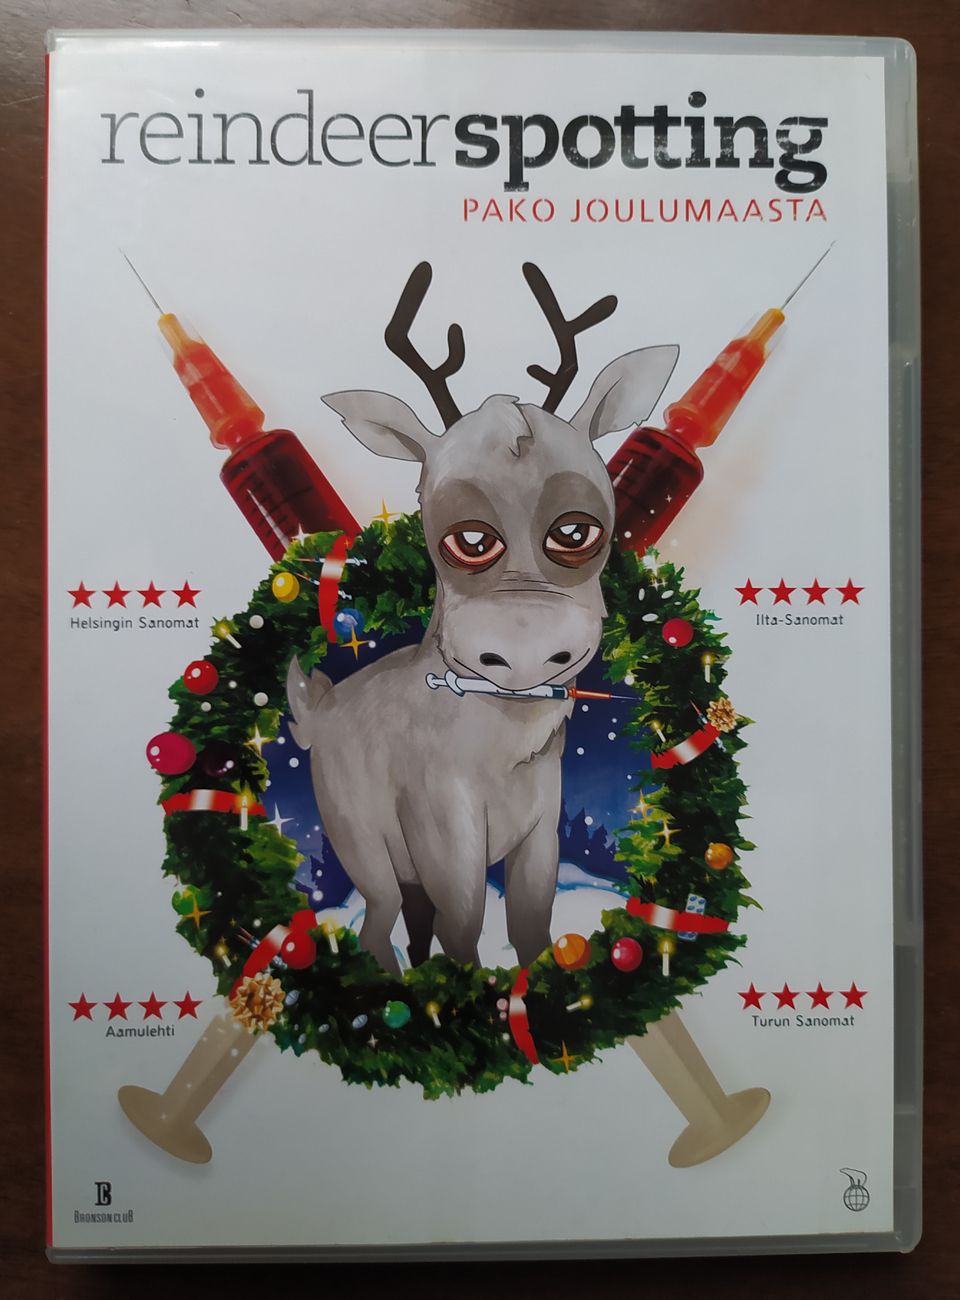 Reindeerspotting DVD